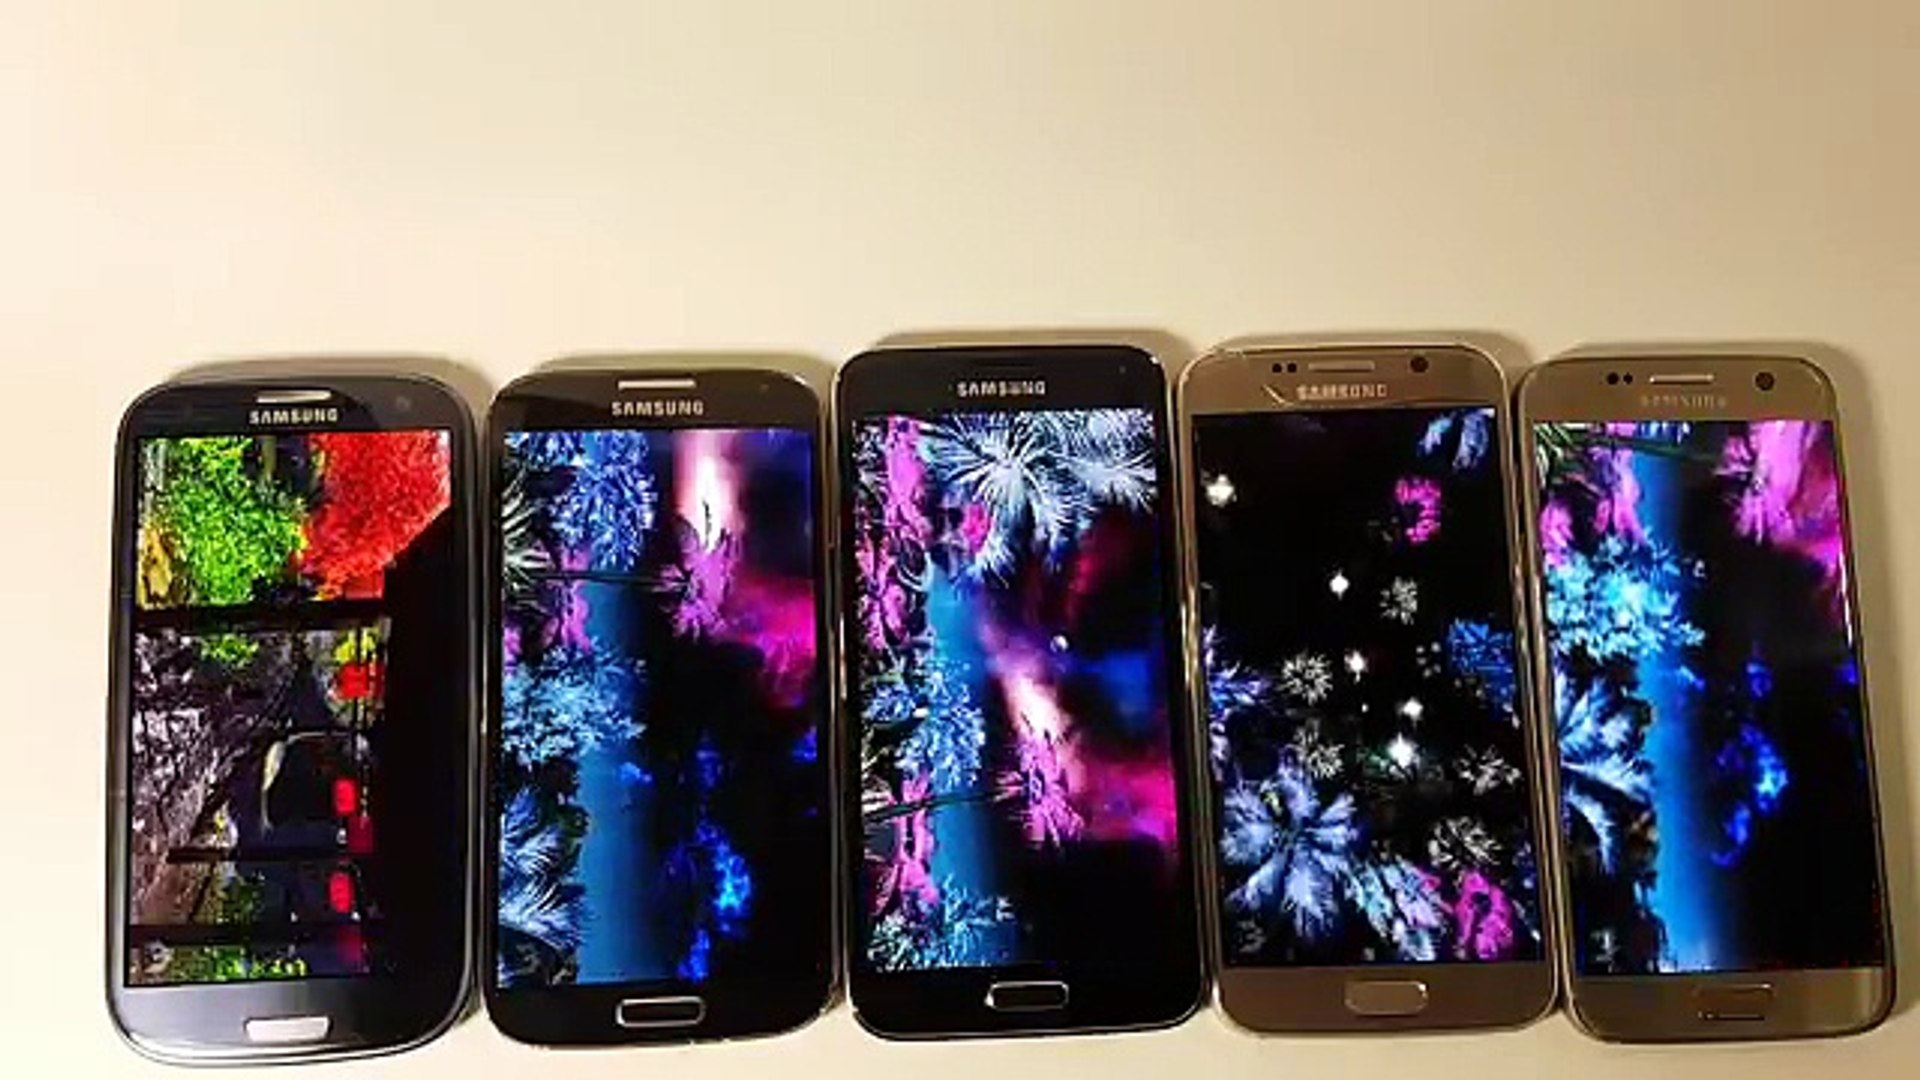 Samsung Galaxy S7 vs S6 vs S5 vs S4 vs S3 AnTuTu Speed test - video  Dailymotion